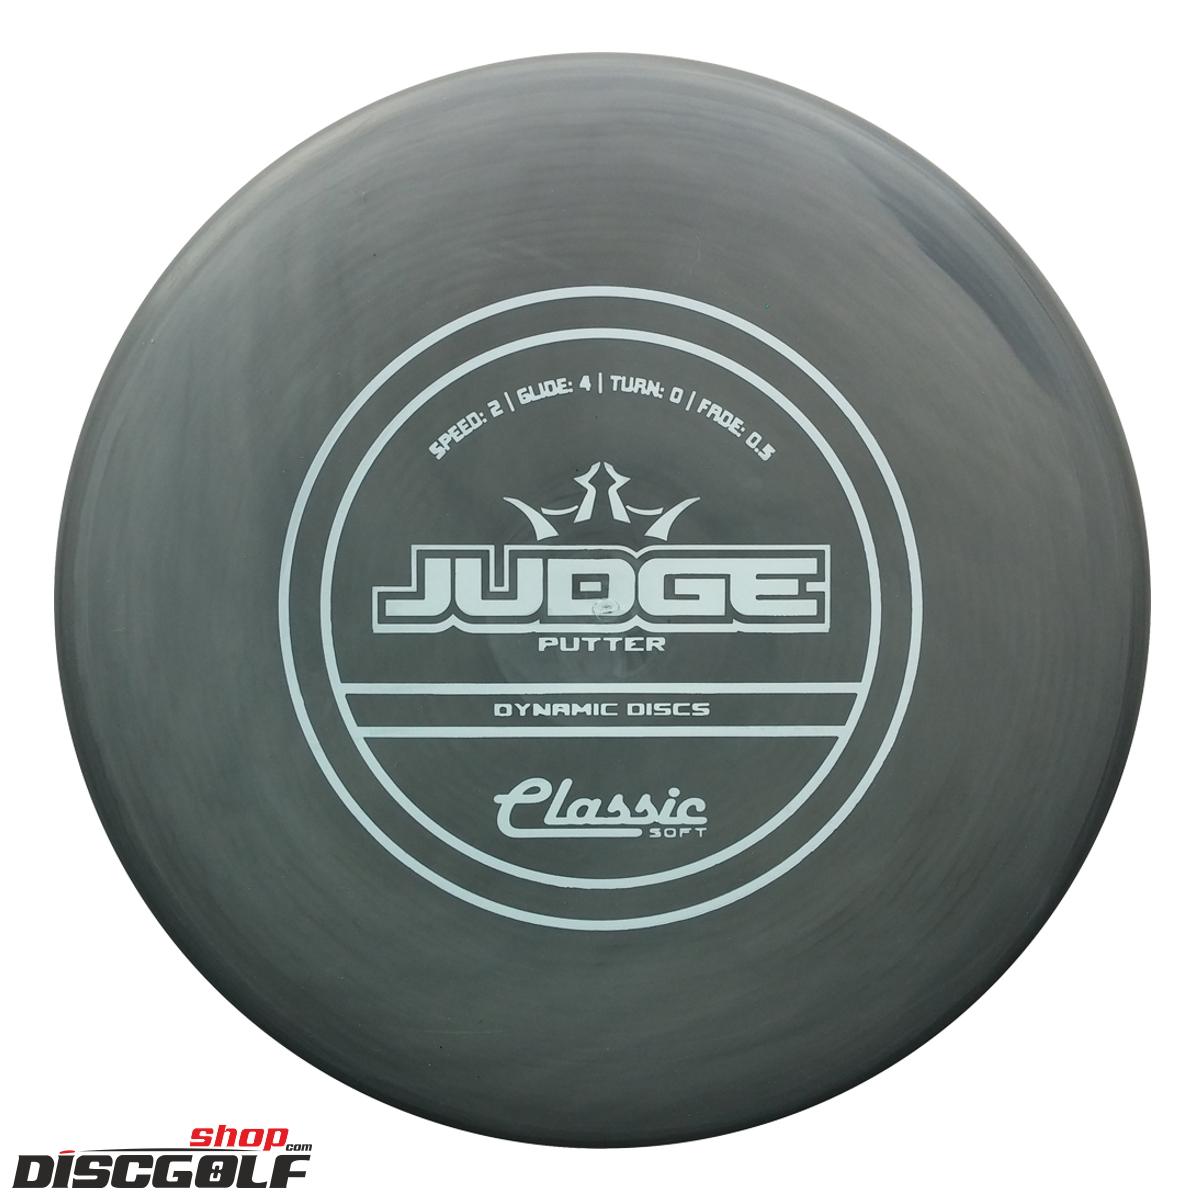 Dynamic Discs Judge Classic Soft